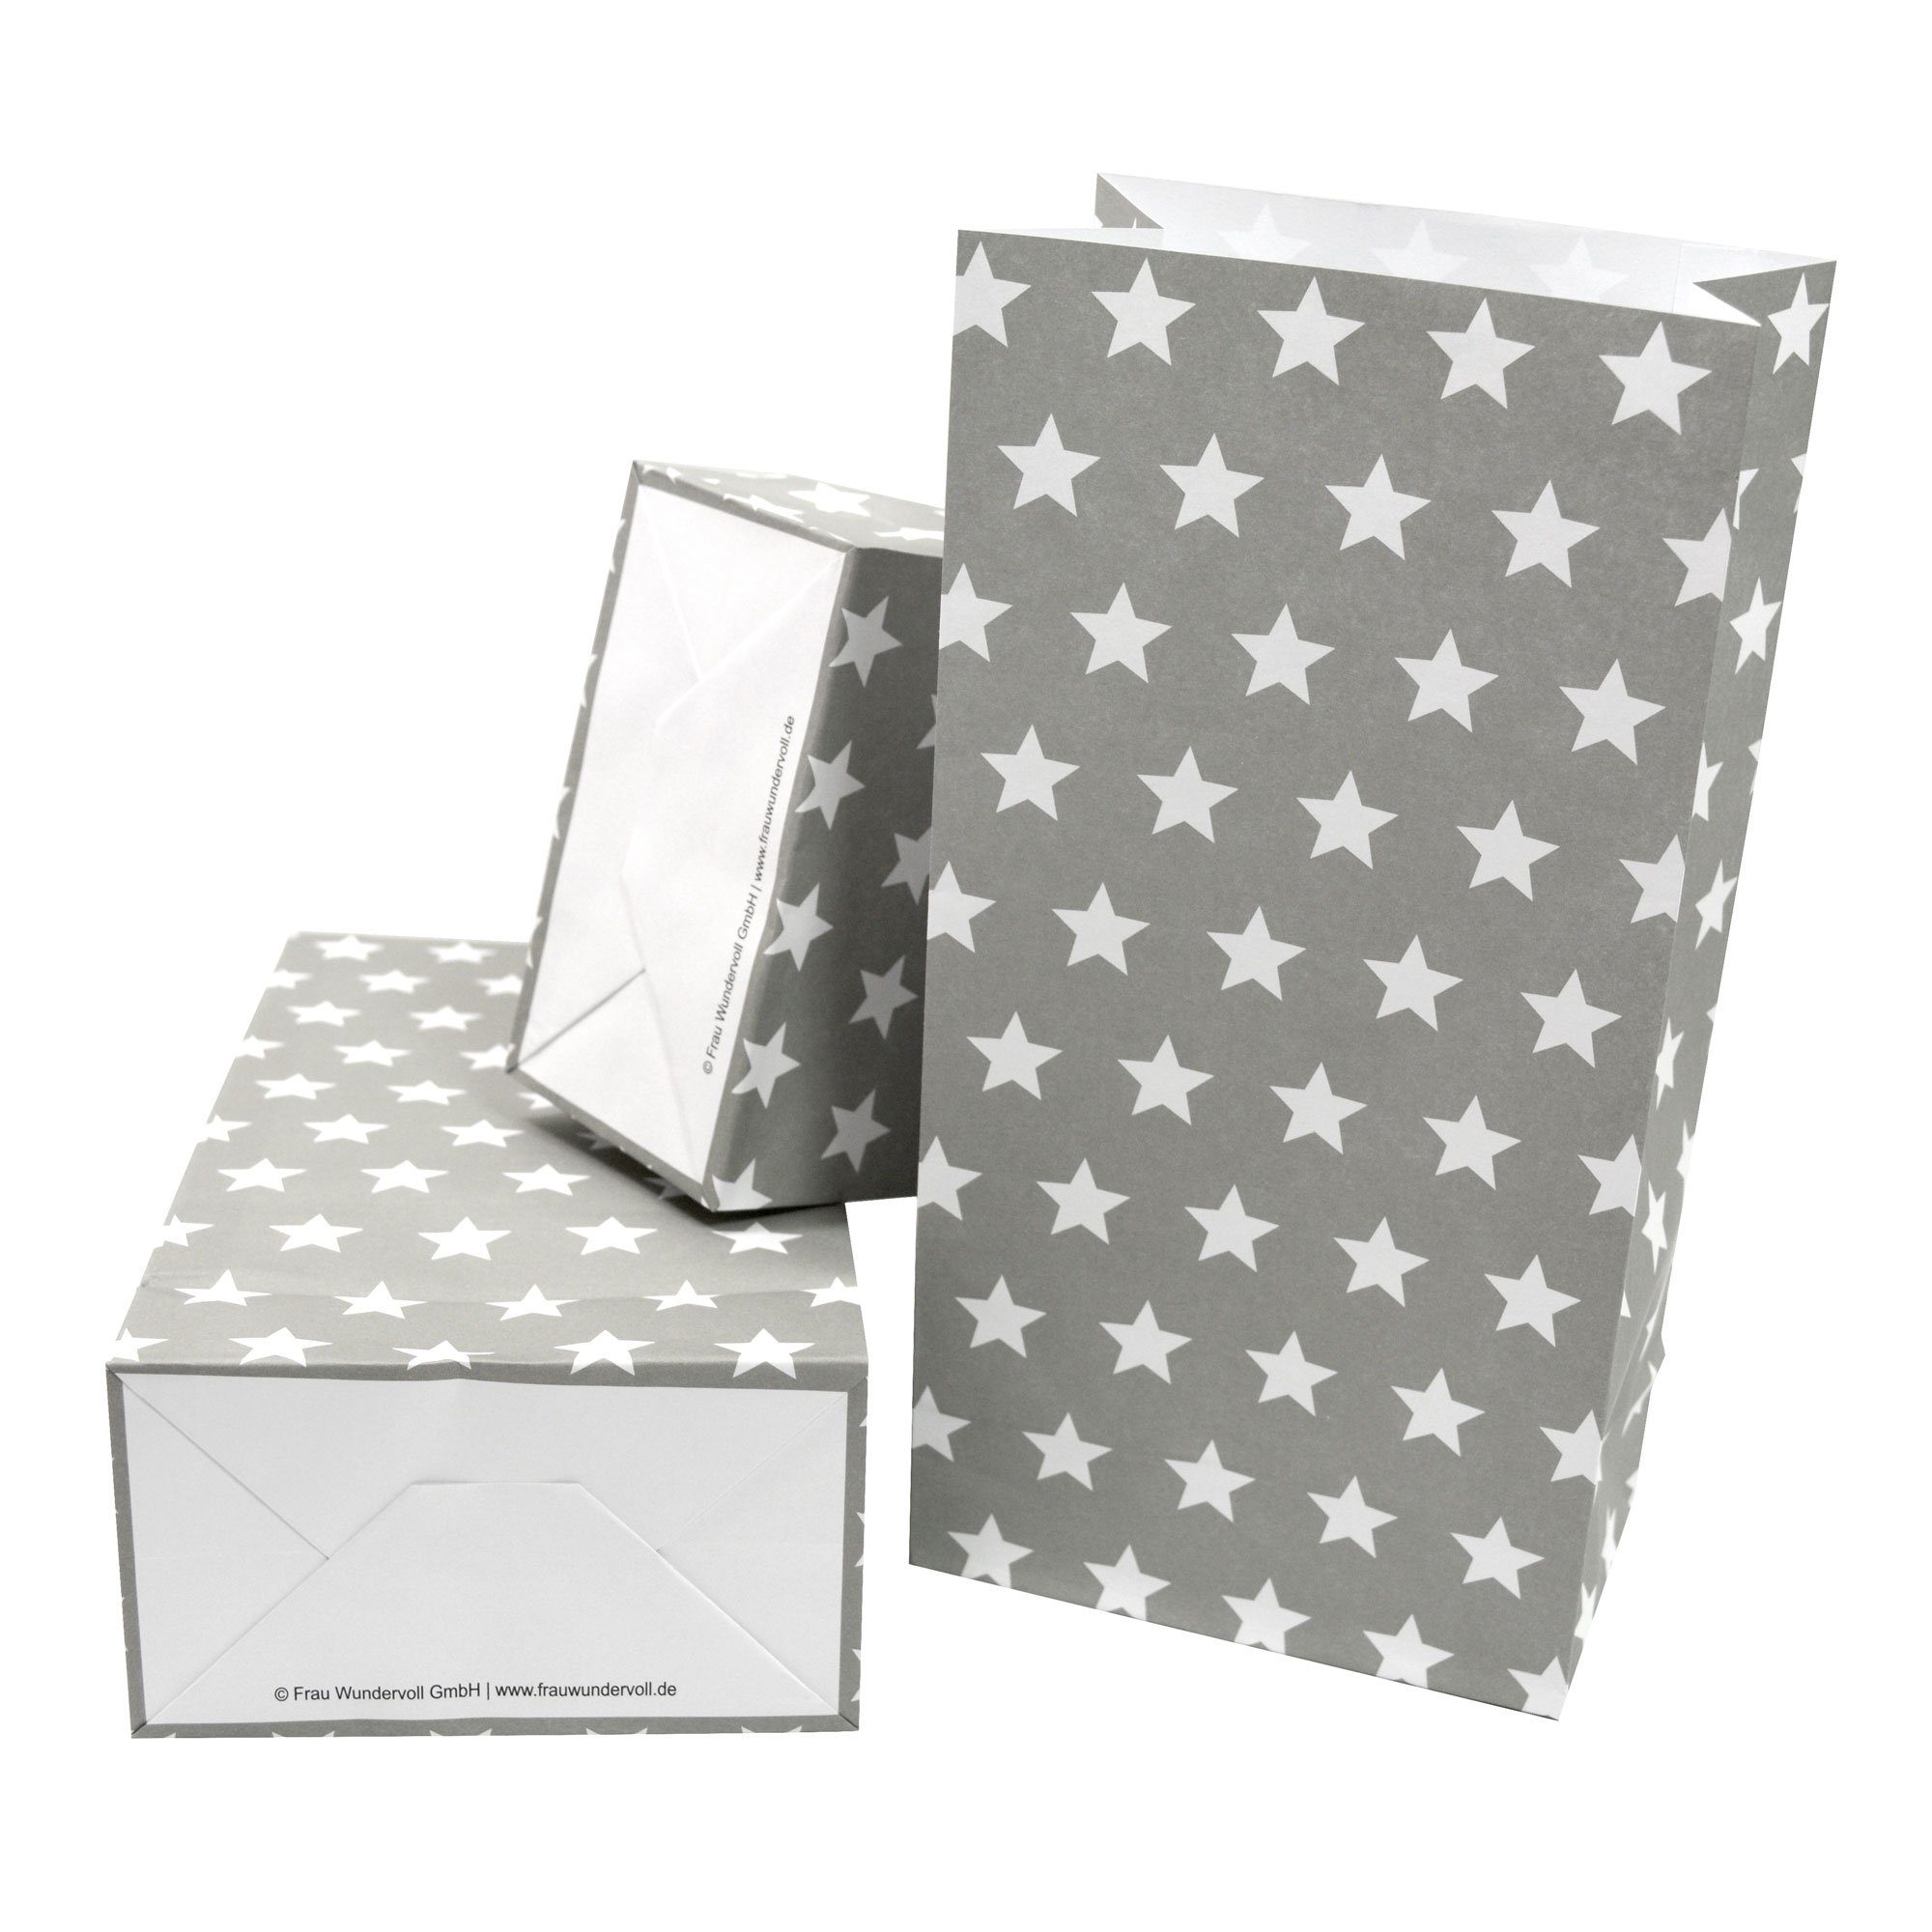 Frau WUNDERVoll Papierdekoration Papiertüten mit Boden - grau, weiße Sterne, 100g